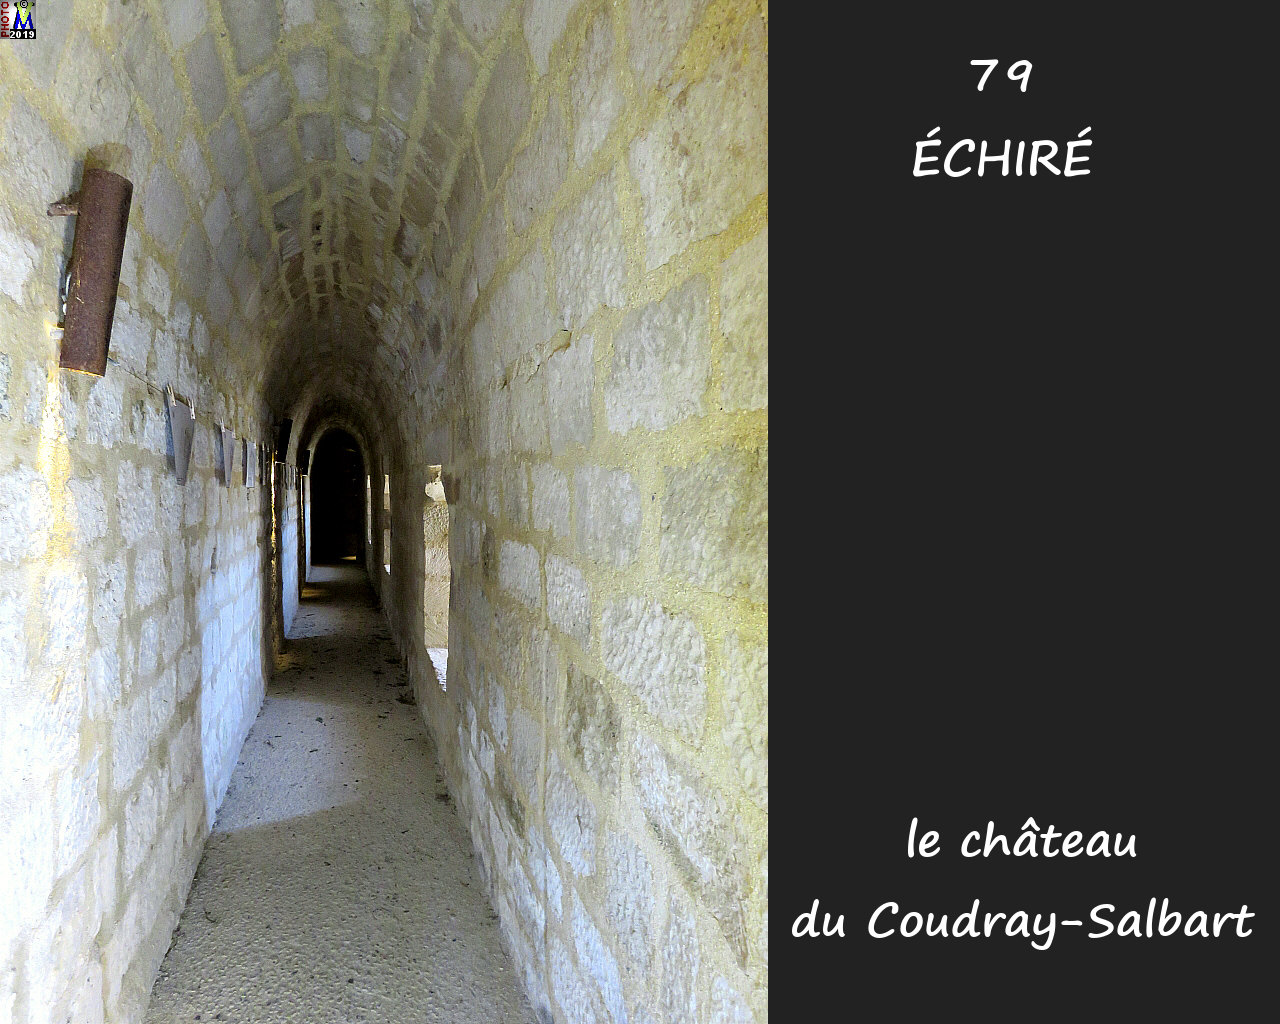 79ECHIRE_chateau_1160.jpg